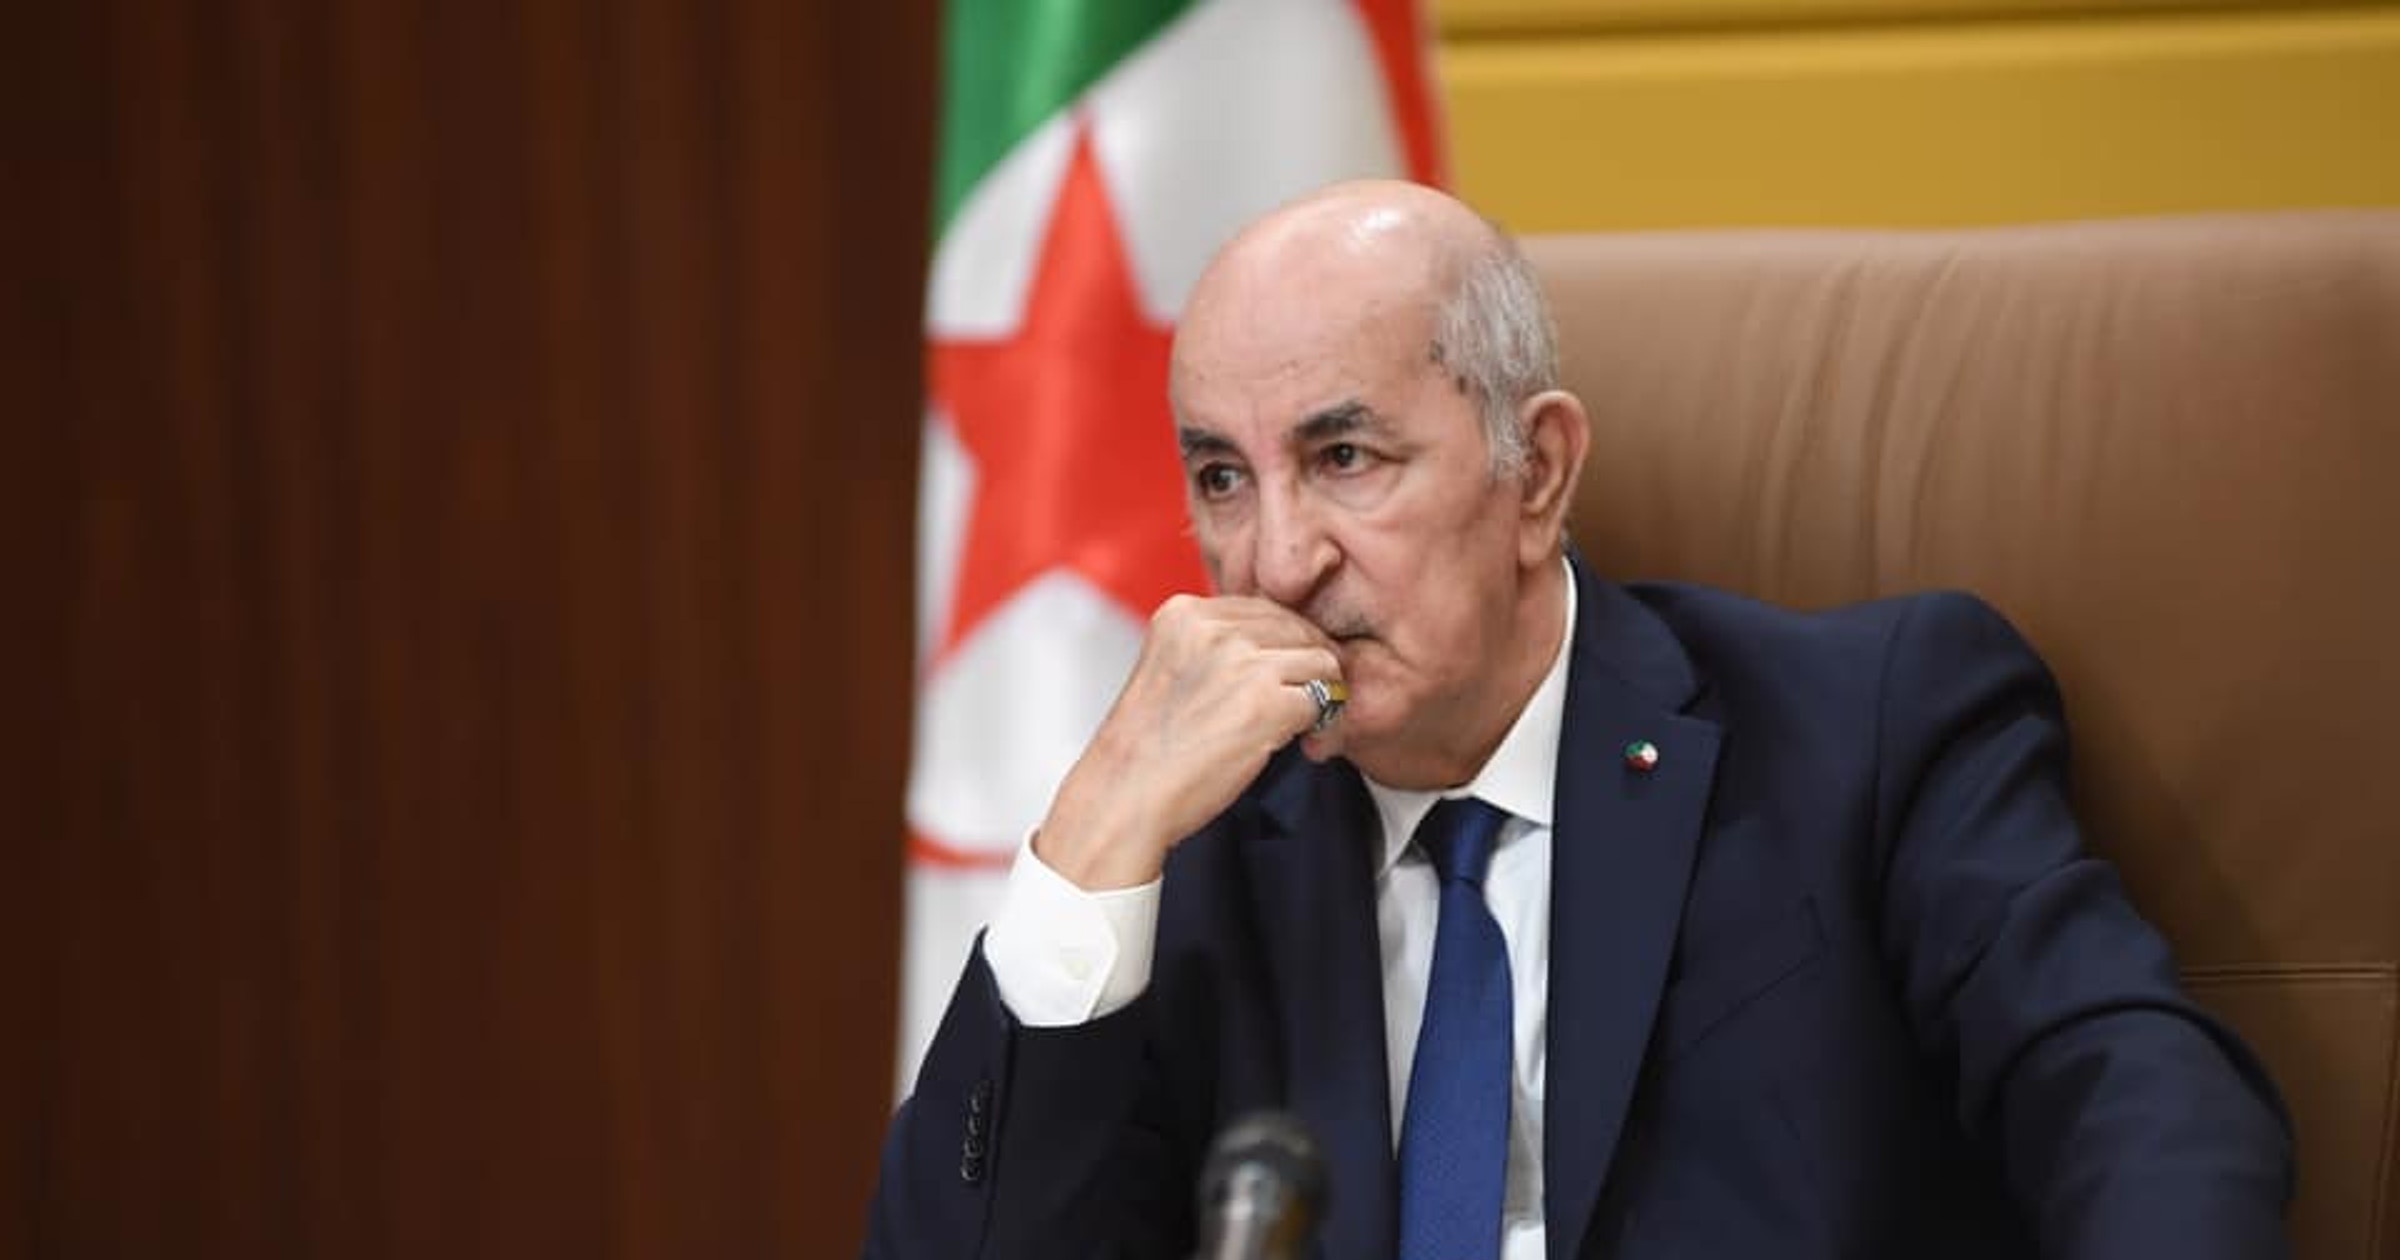 مالي تدين مواقف الجزائر “غير الودية” وتطالبها بوقف أعمالها العدائية